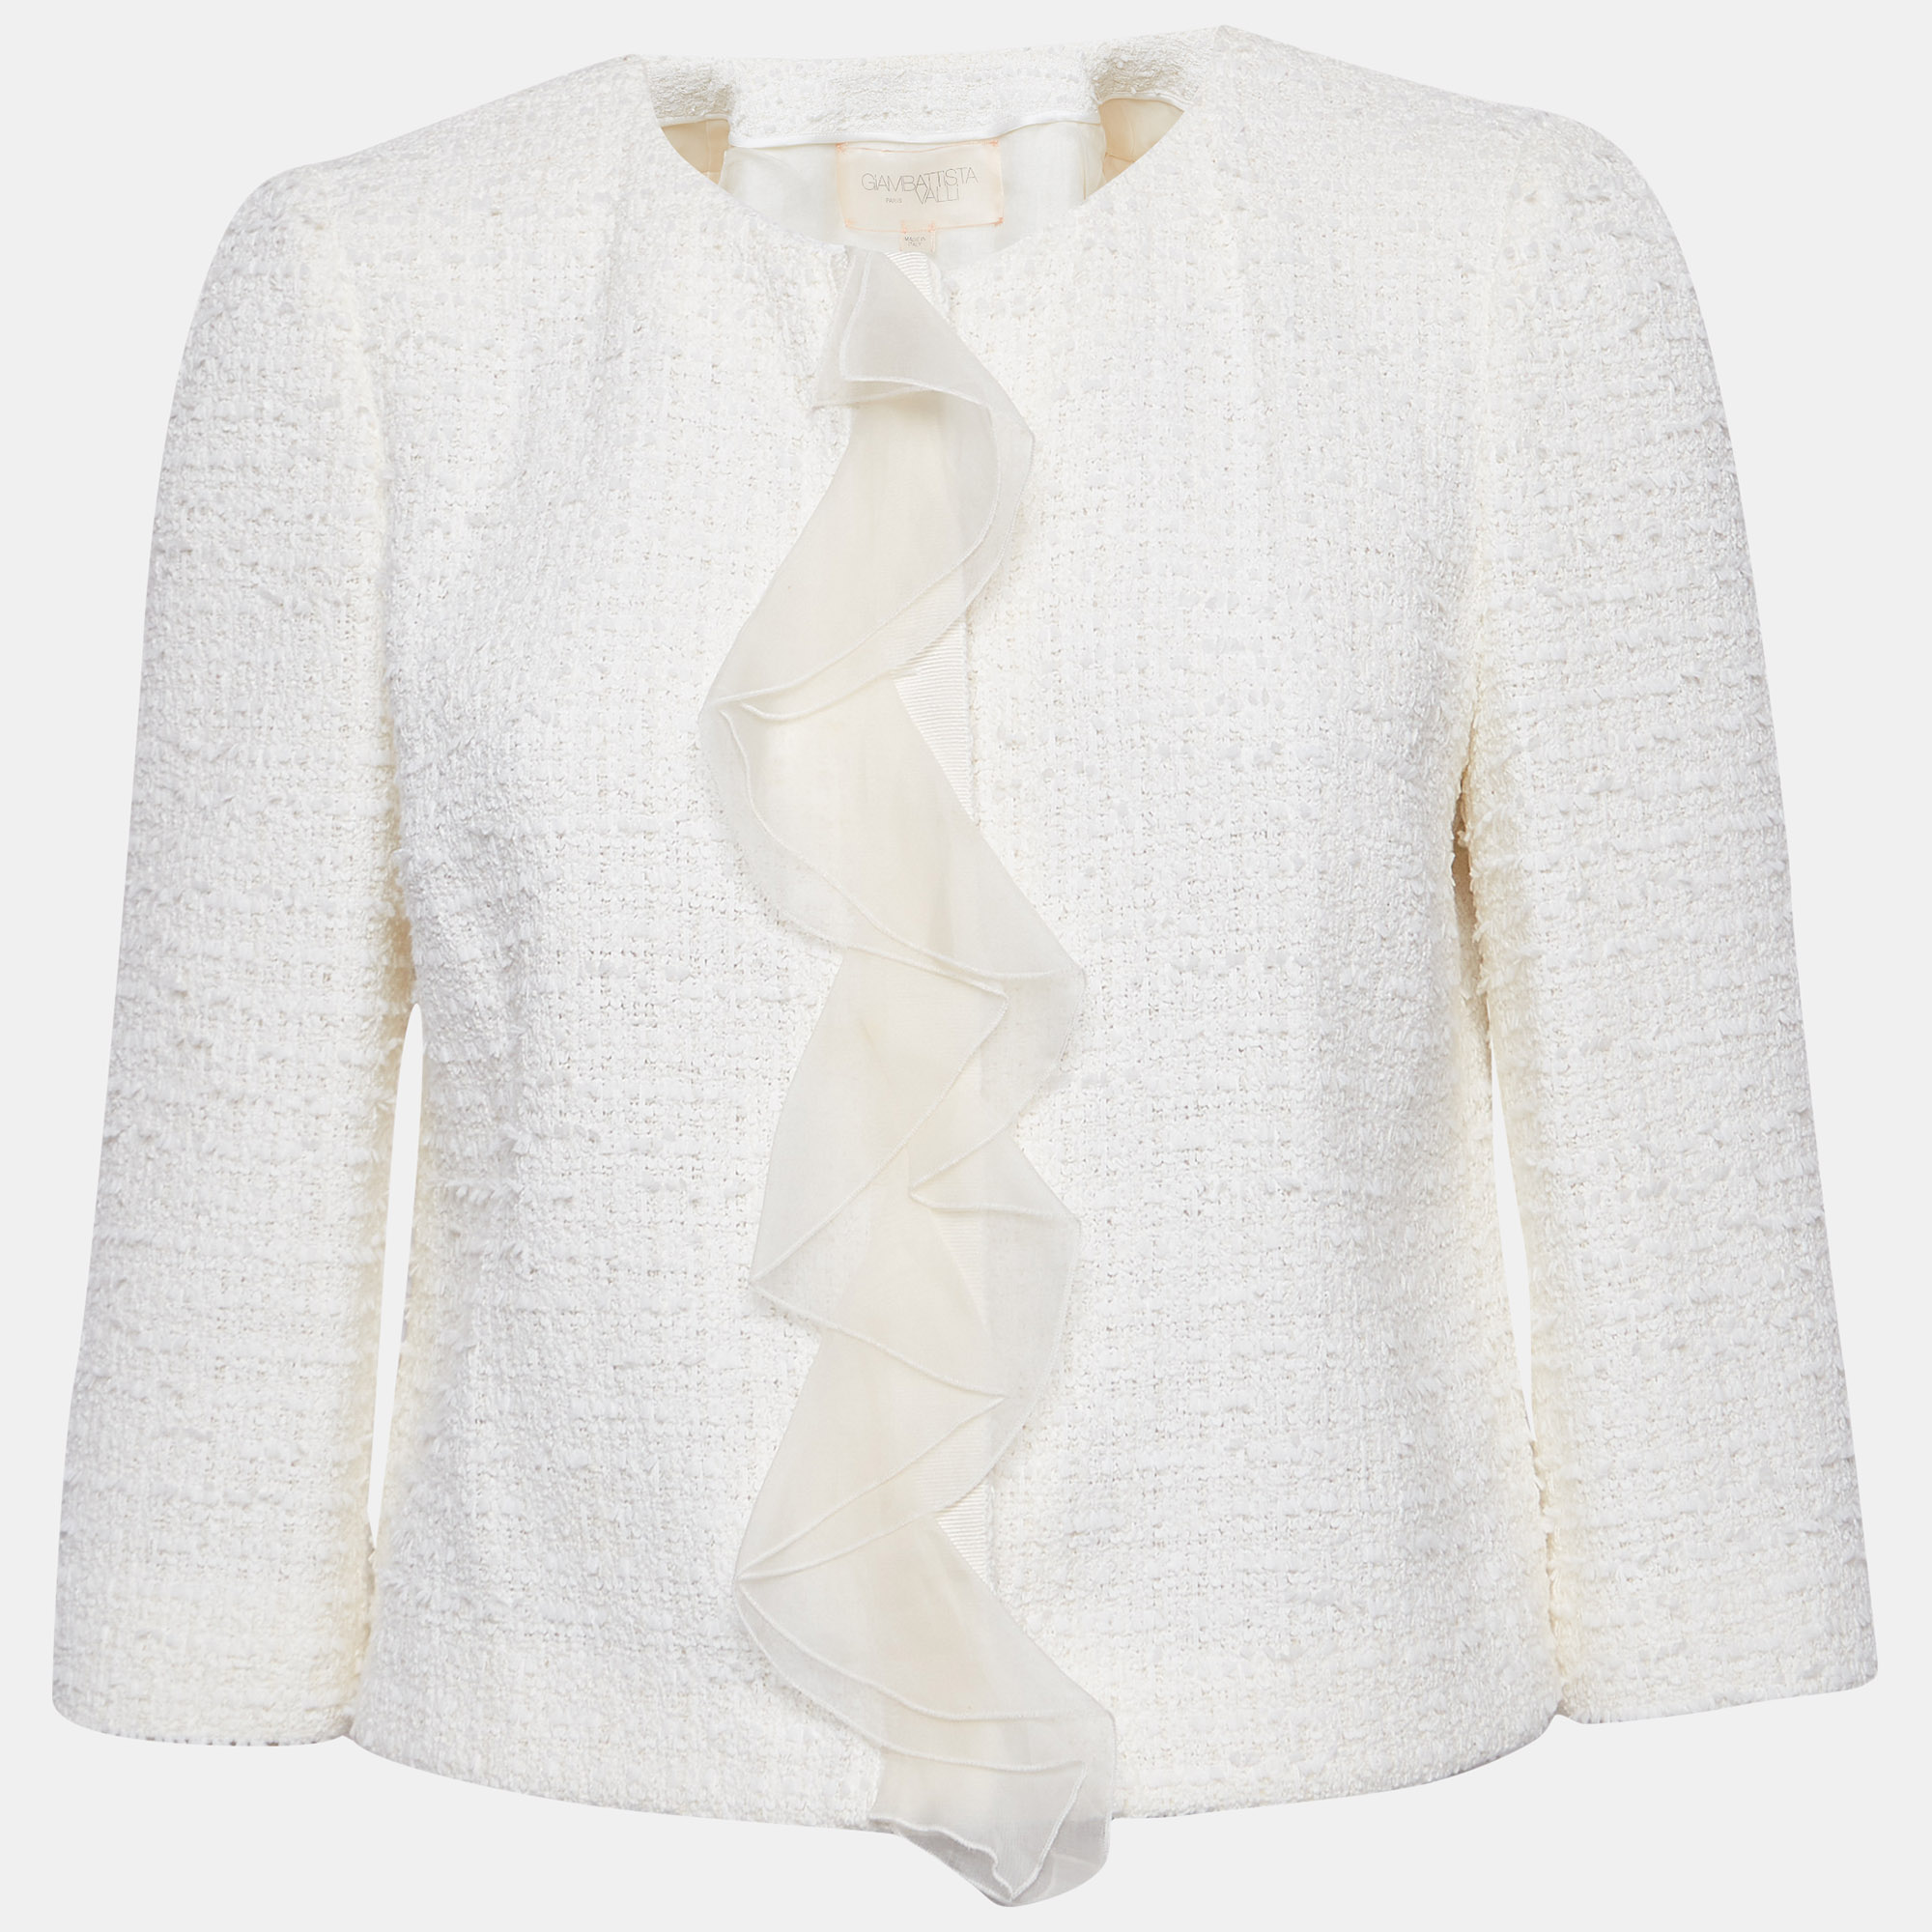 Giambattista valli white tweed jacket s